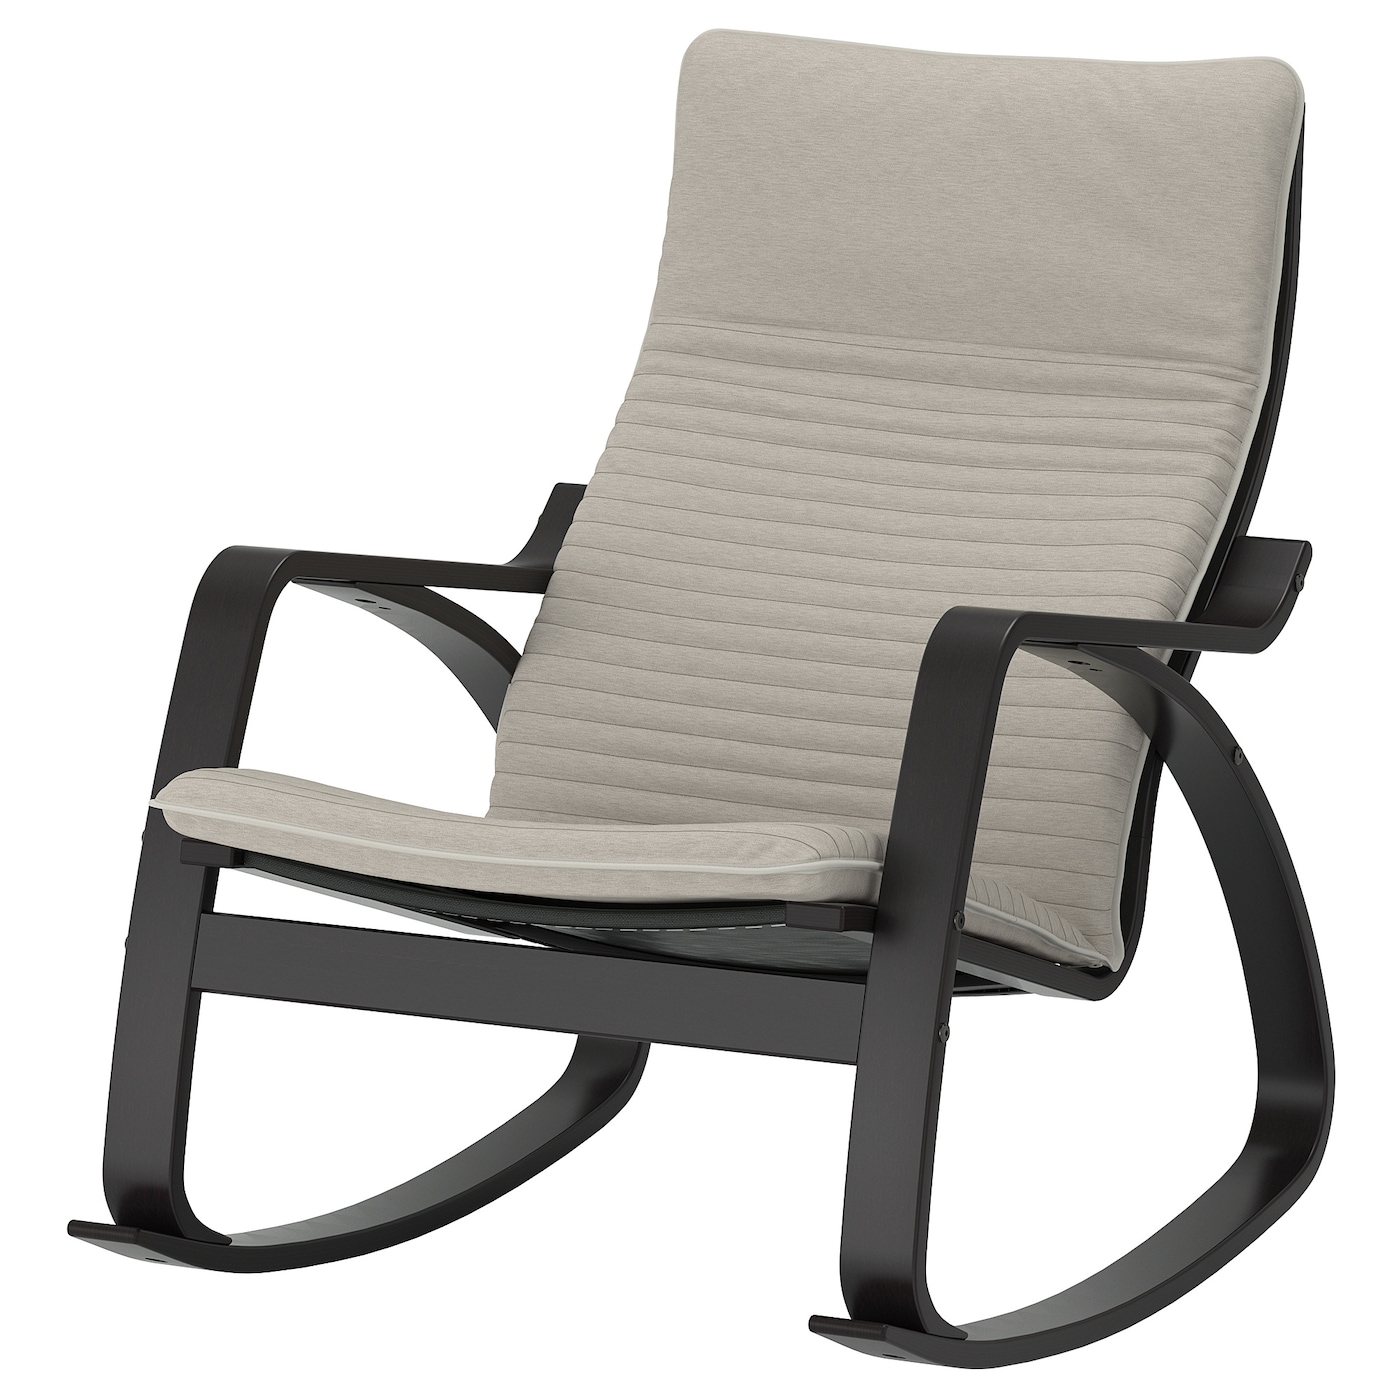 ПОЭНГ Кресло-качалка, черно-коричневый/Книса светло-бежевый POÄNG IKEA кресло качалка добропаровъ 2554867 бежевый